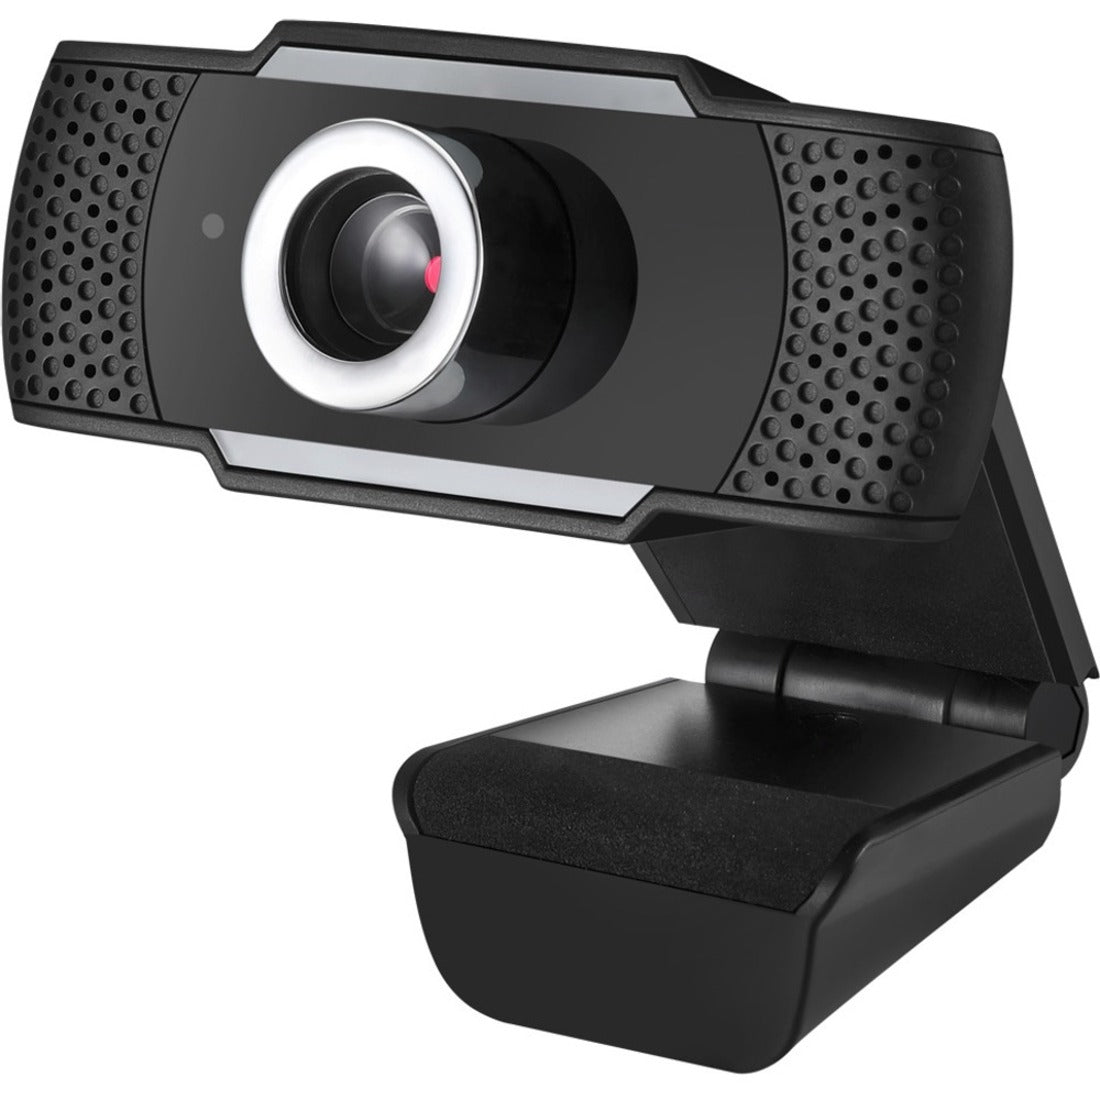 Adesso CyberTrack H4 Webcam - 2.1 Megapixel - 30 fps - Black, Silver - USB 3.0 - 1 Pack(s)